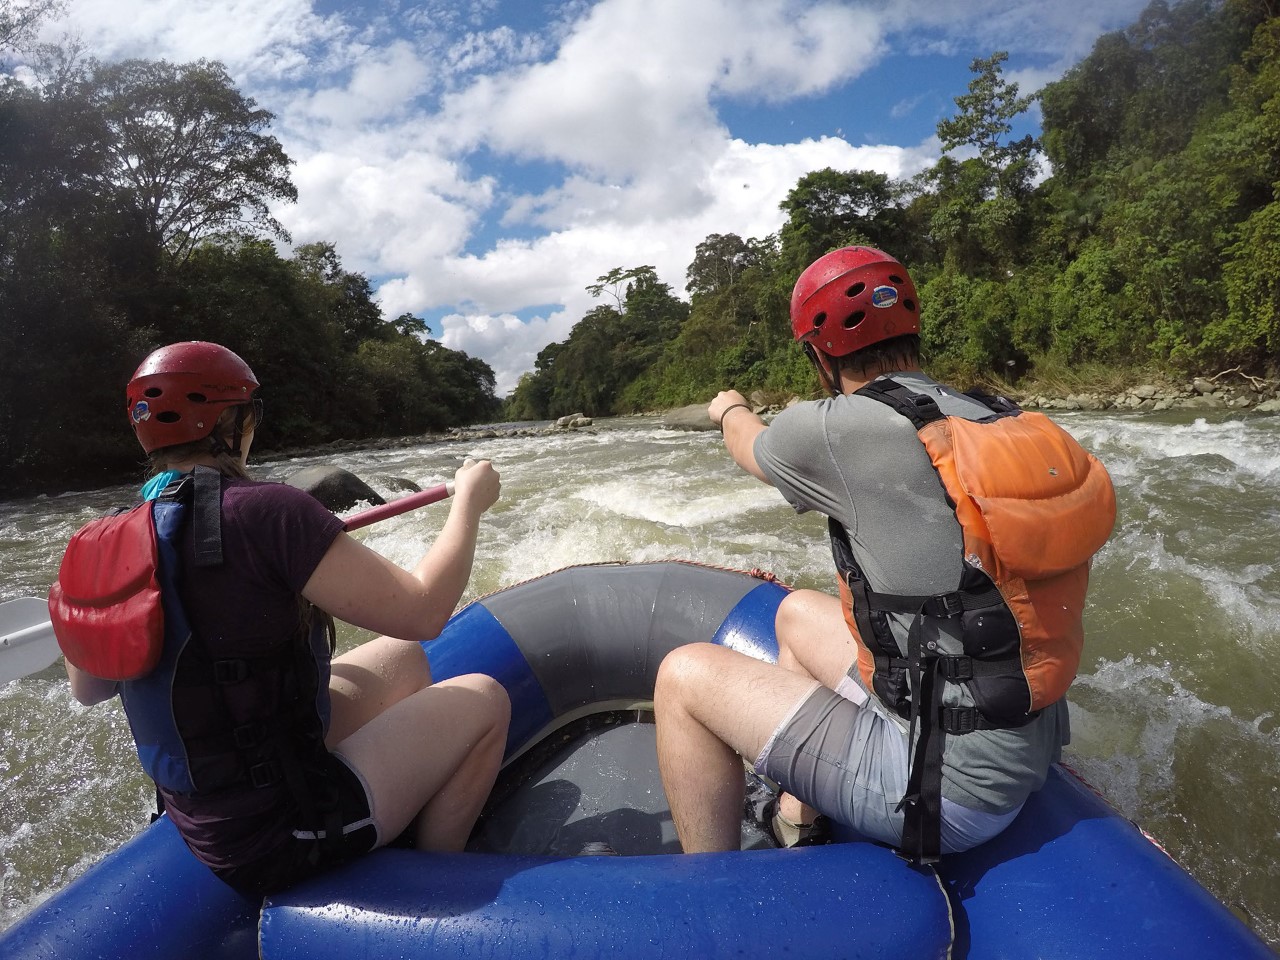 Conferencia internacional de turismo de aventura en Panamá